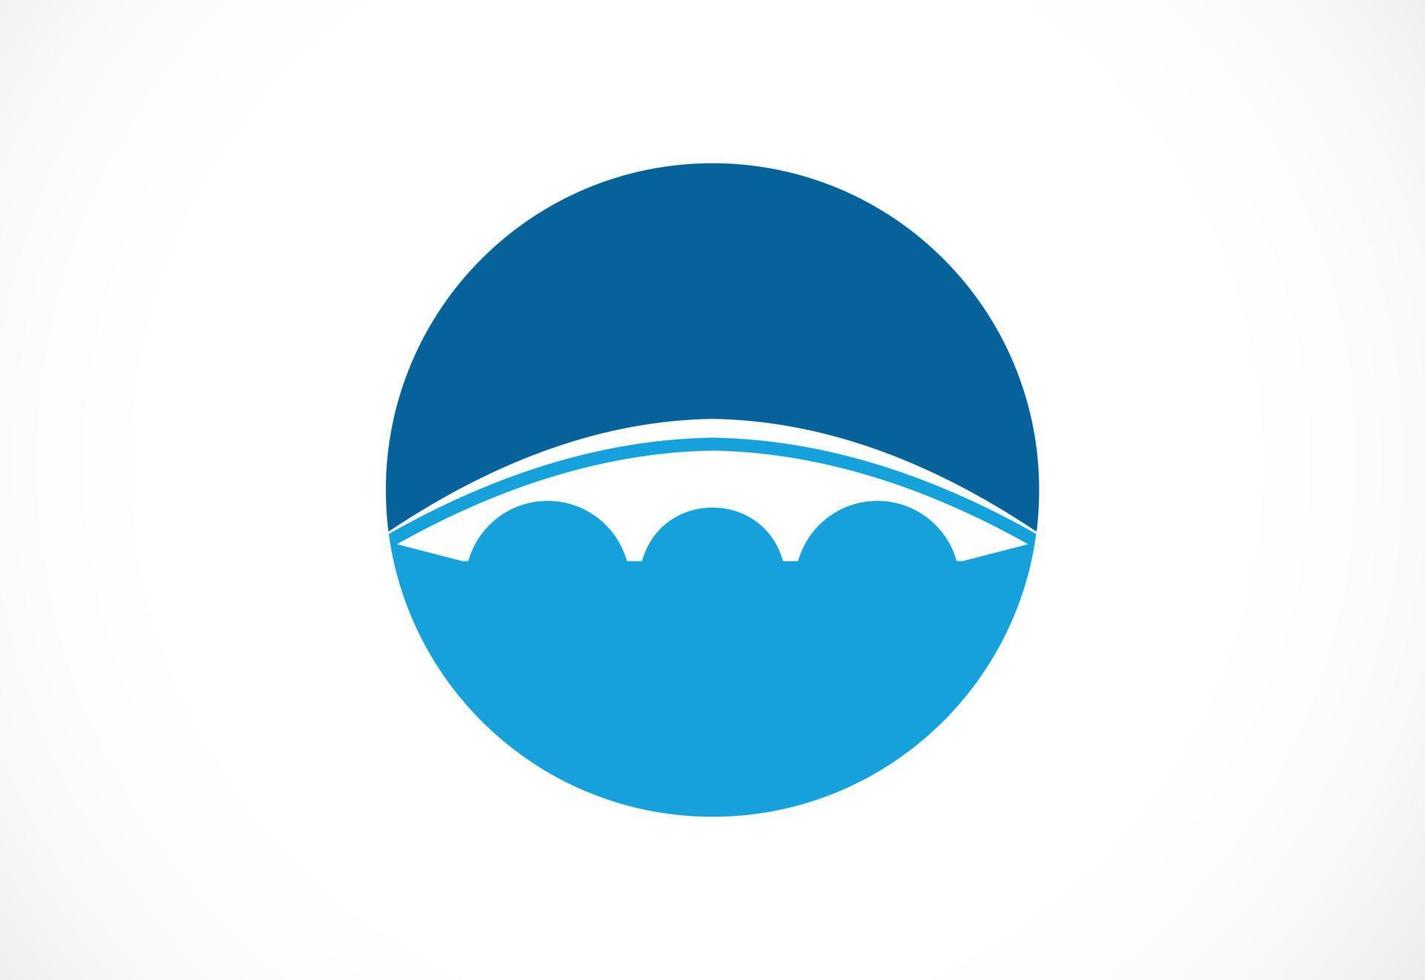 Creative abstract Bridge logo design, Vector design template